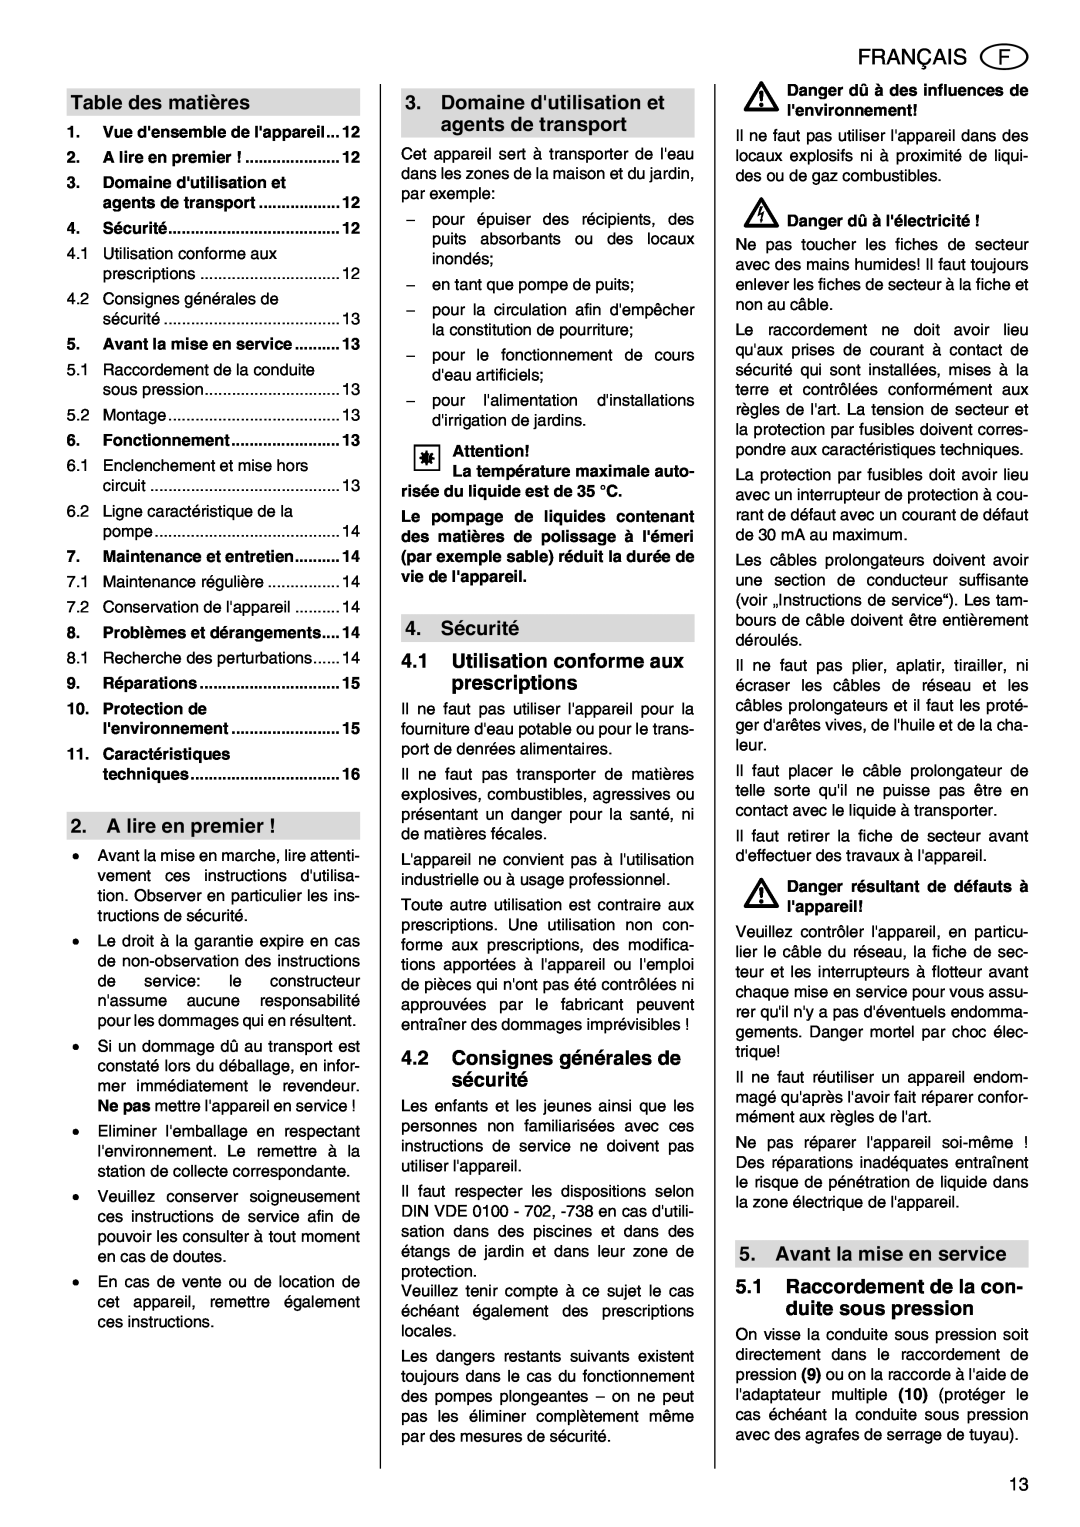 Metabo TDP 7500 S manual Français, Table des matières, A lire en premier, Domaine dutilisation et agents de transport 